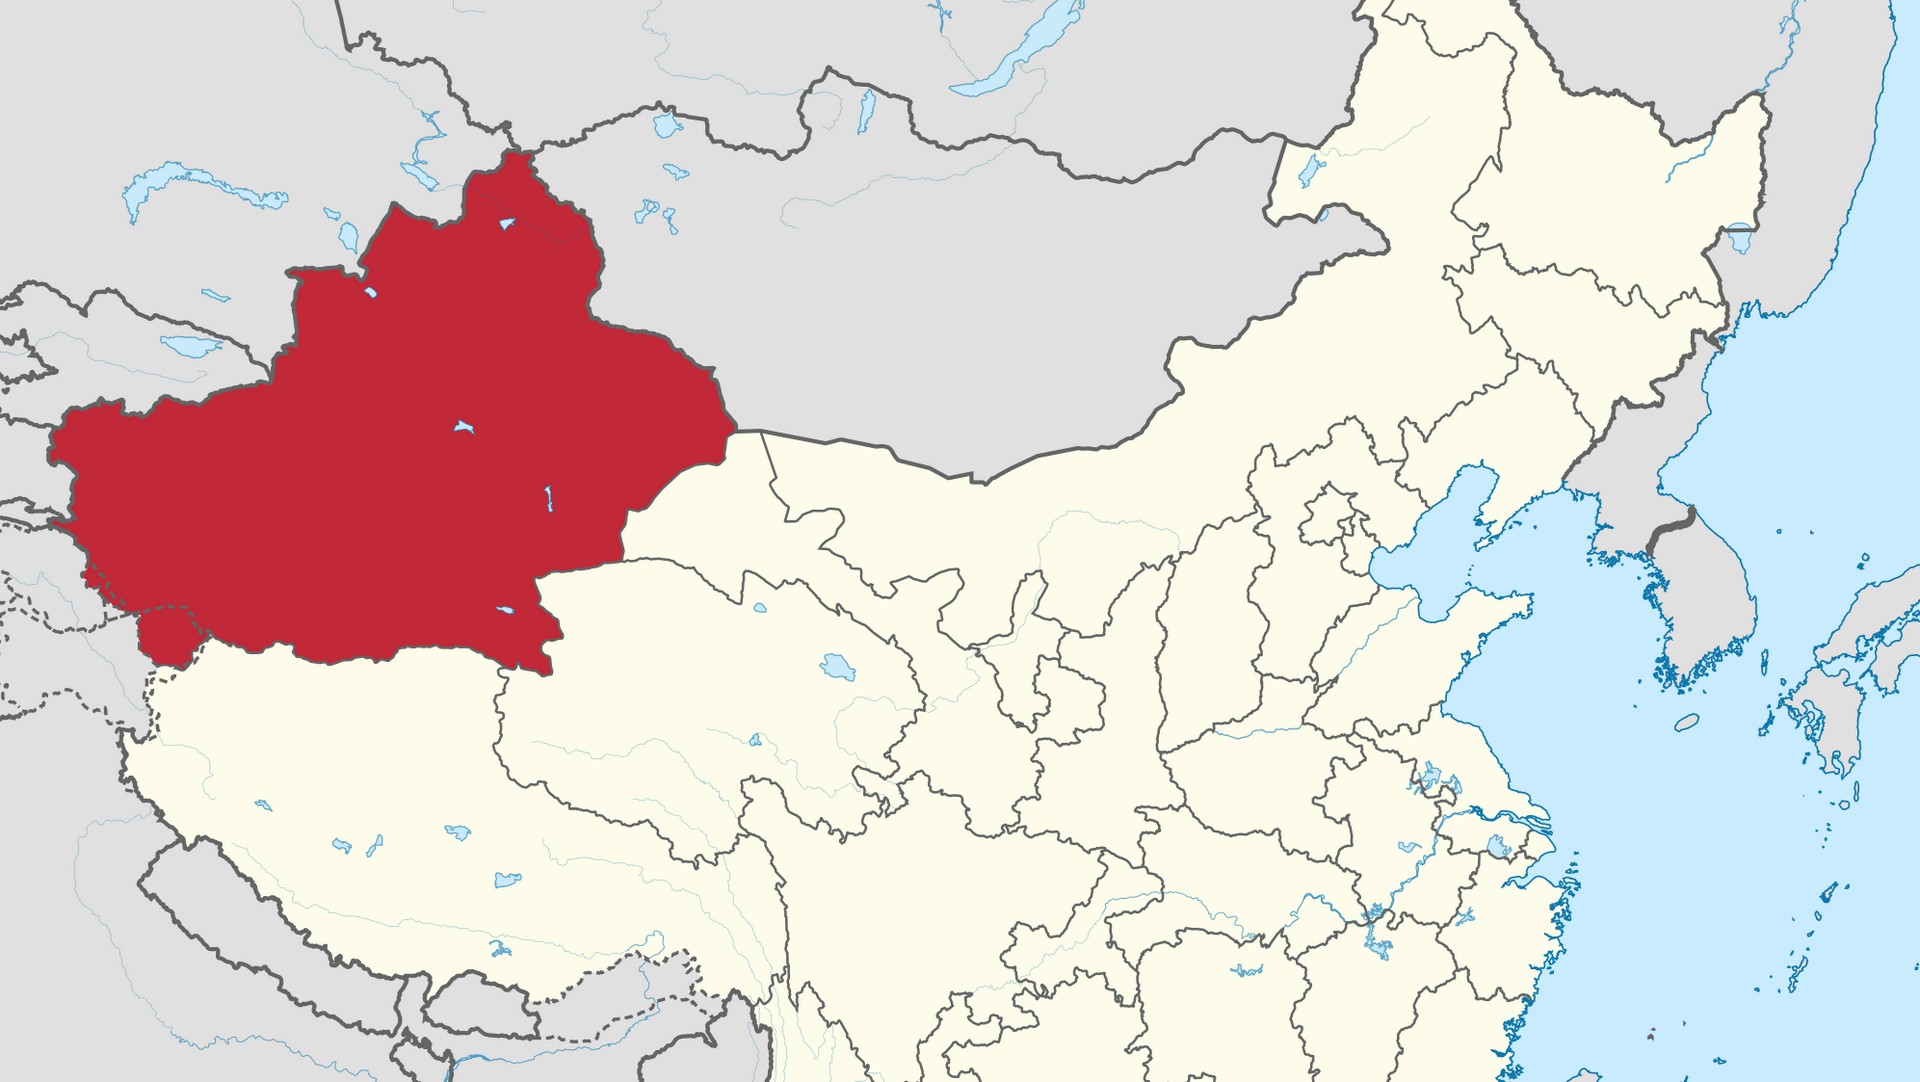 La province du Xinjiang, au nord-ouest de la Chine est peuplée par la minorité musulmane des Ouighours